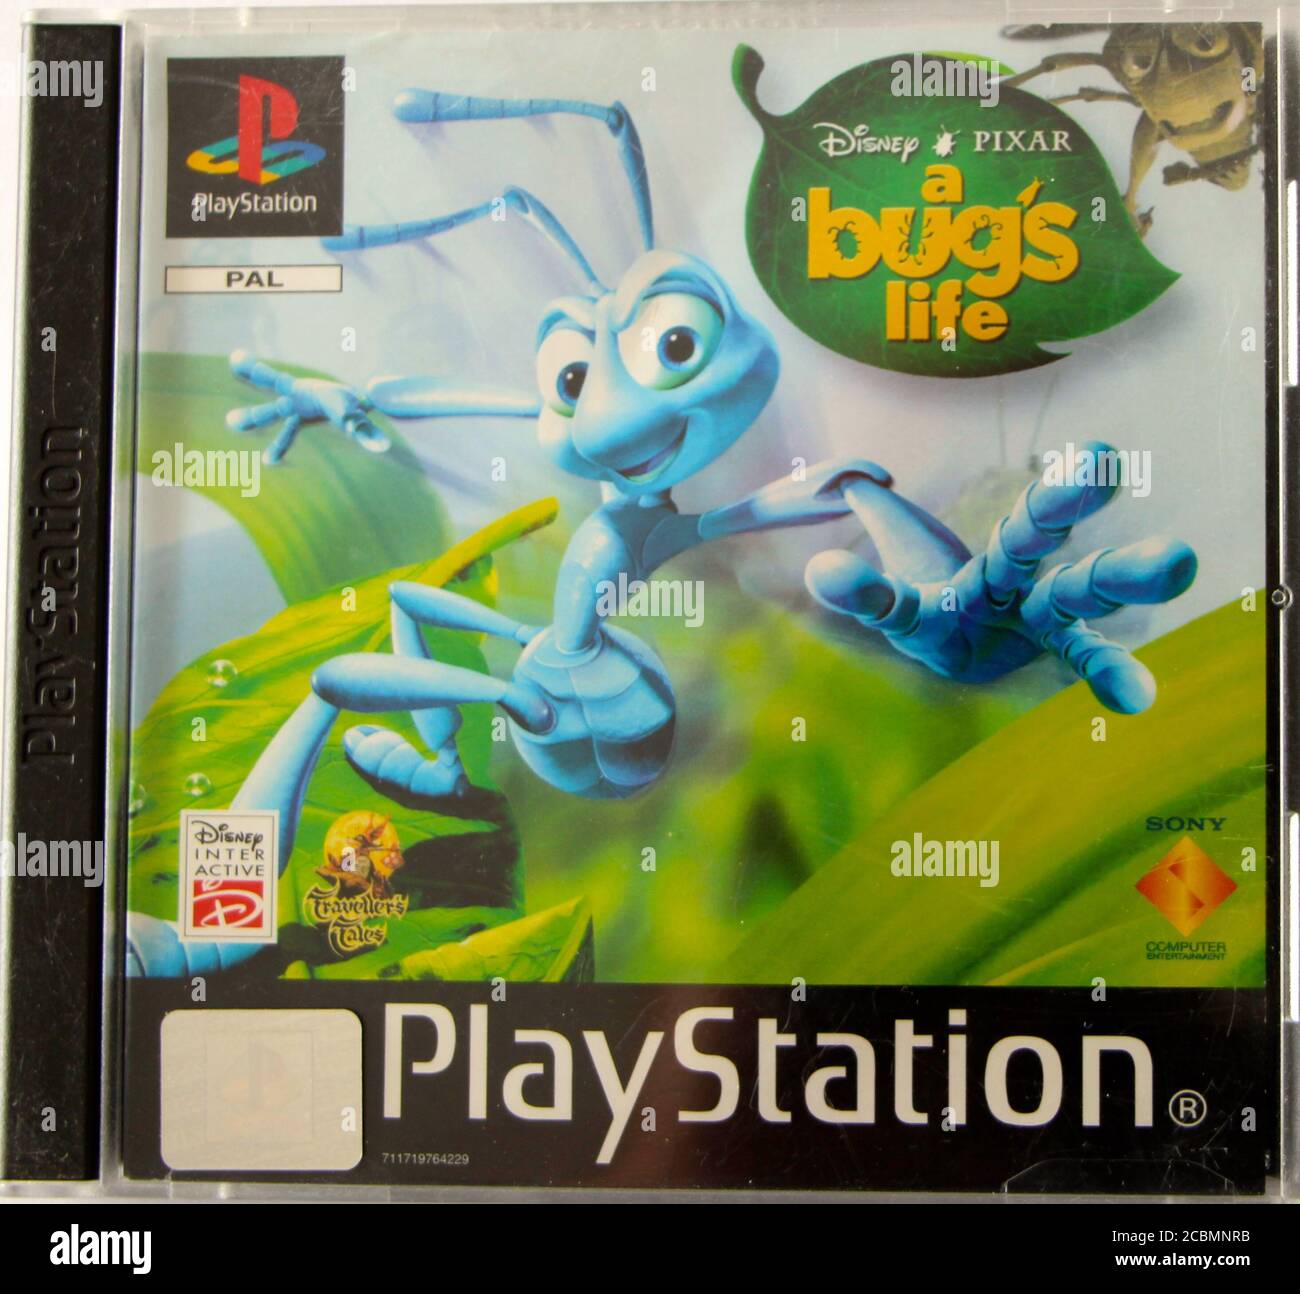 Foto de una caja original de CD de PlayStation 1 y portada para una vida de insectos de Disney Pixar Foto de stock